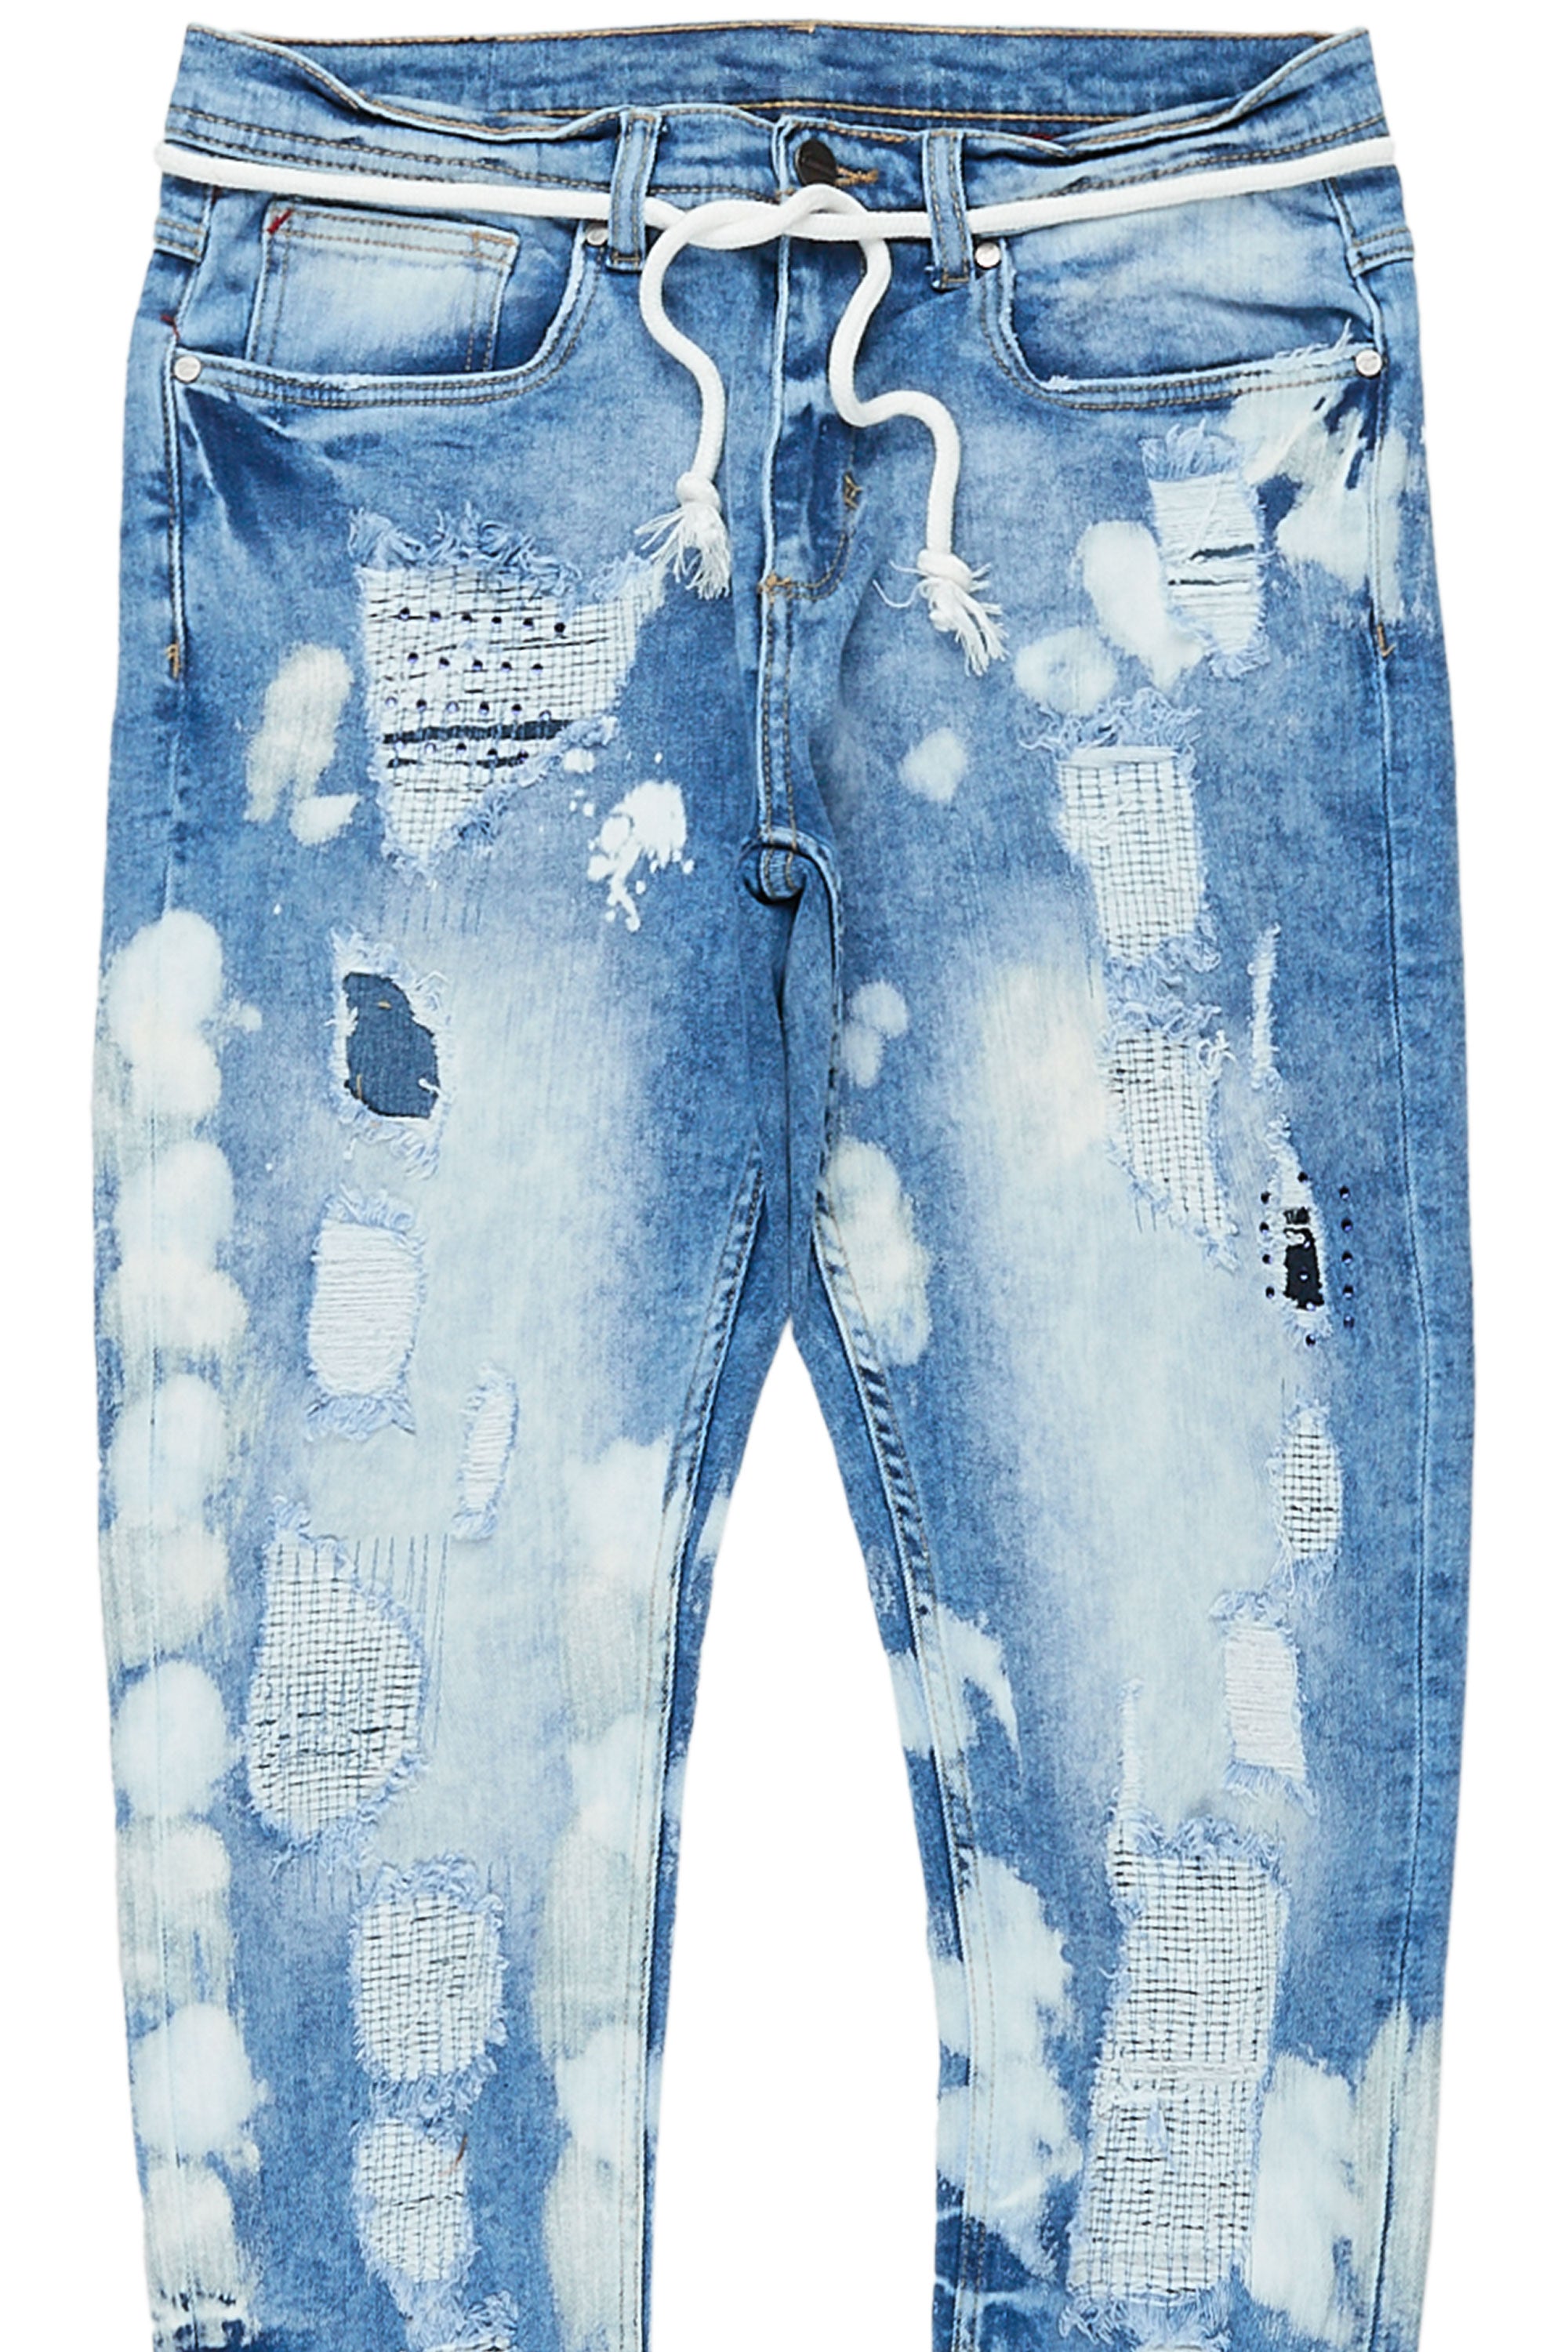 Lenox Light Blue 5 Pocket Jean